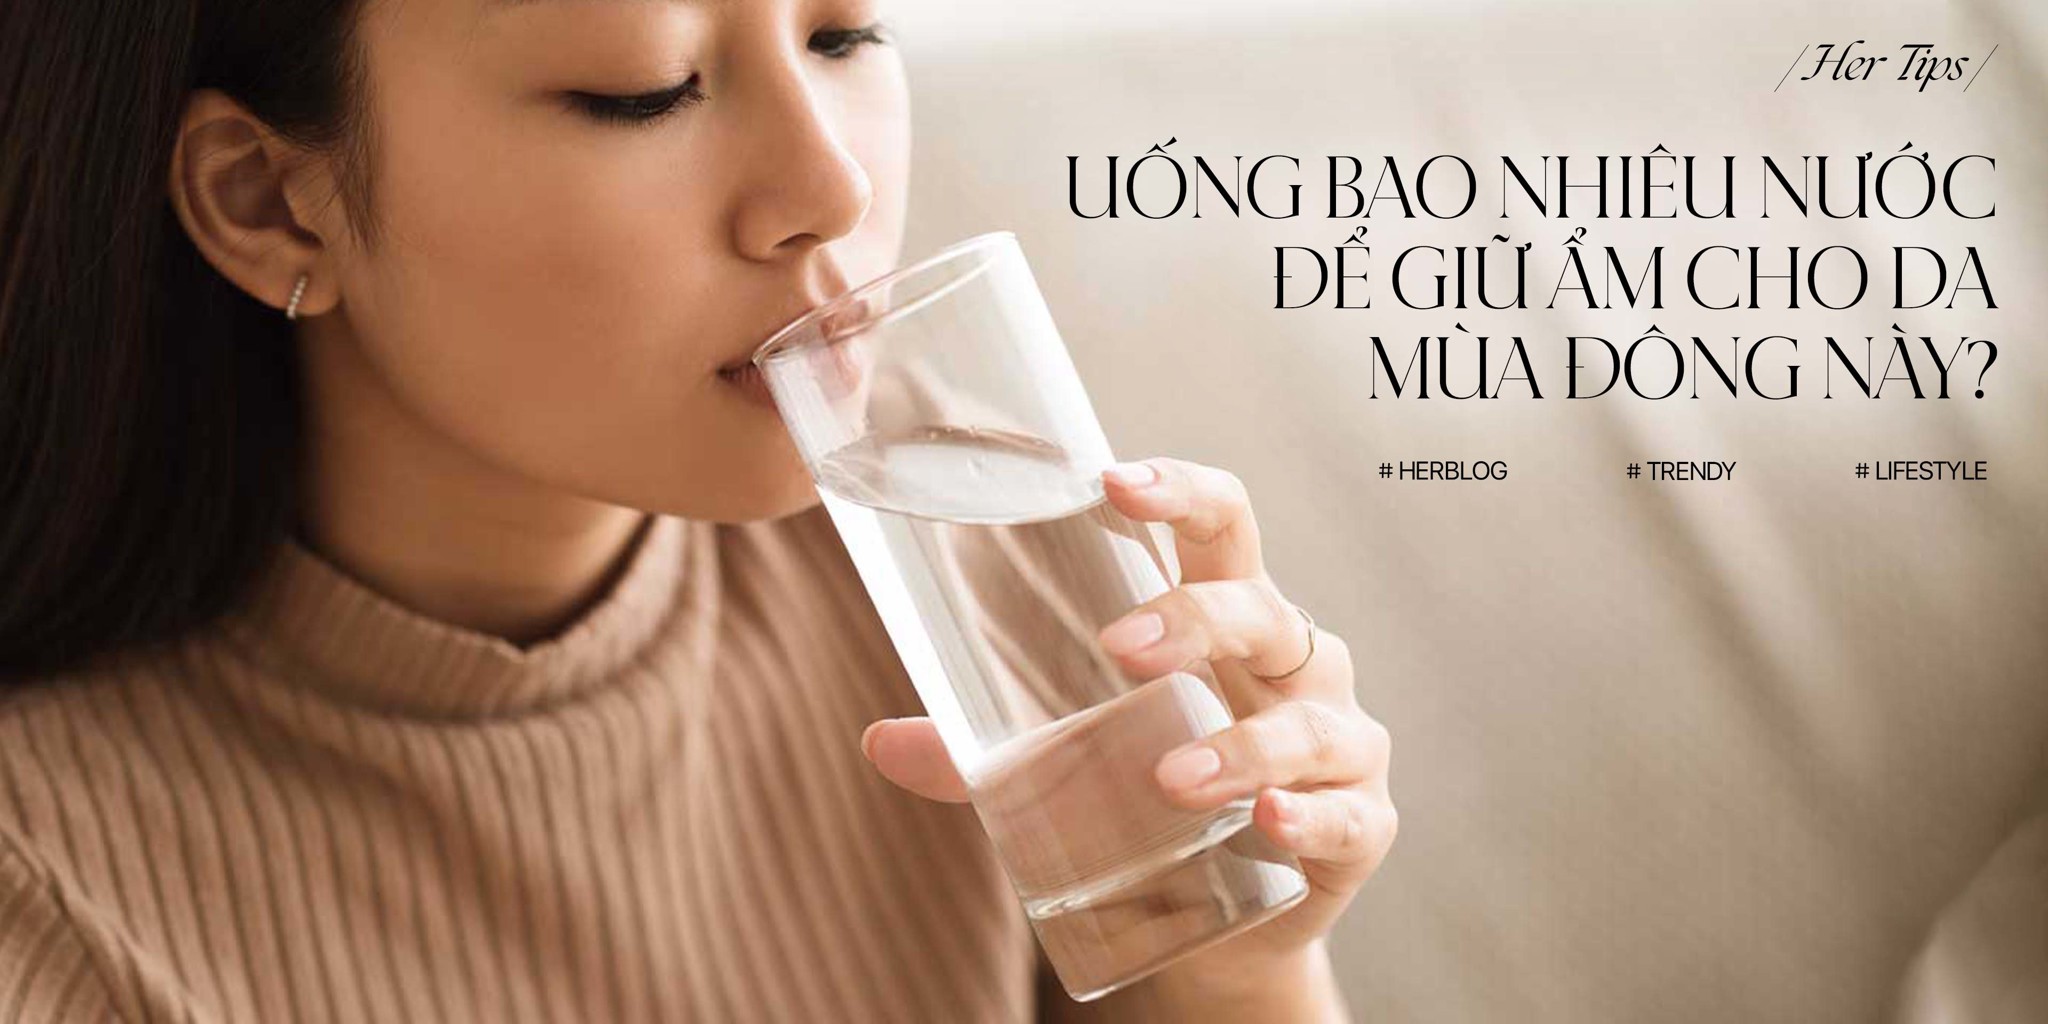 [HER TIPS] Cần uống bao nhiêu nước để giữ ẩm cho da mùa đông này?